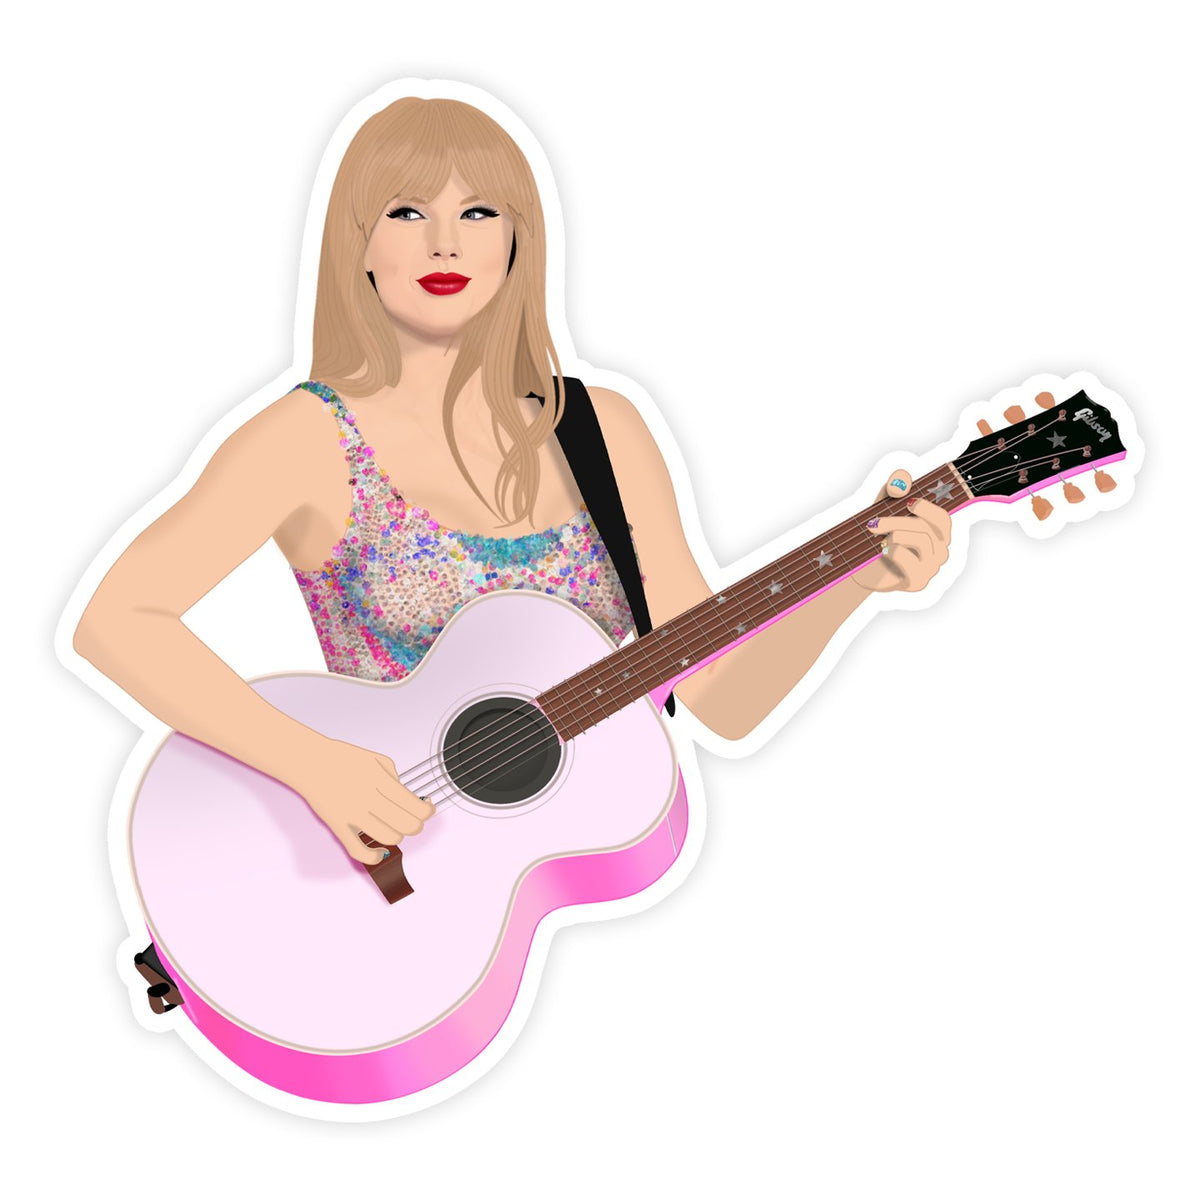 Sticker - Taylor Swift Eras Tour - Gift & Gather